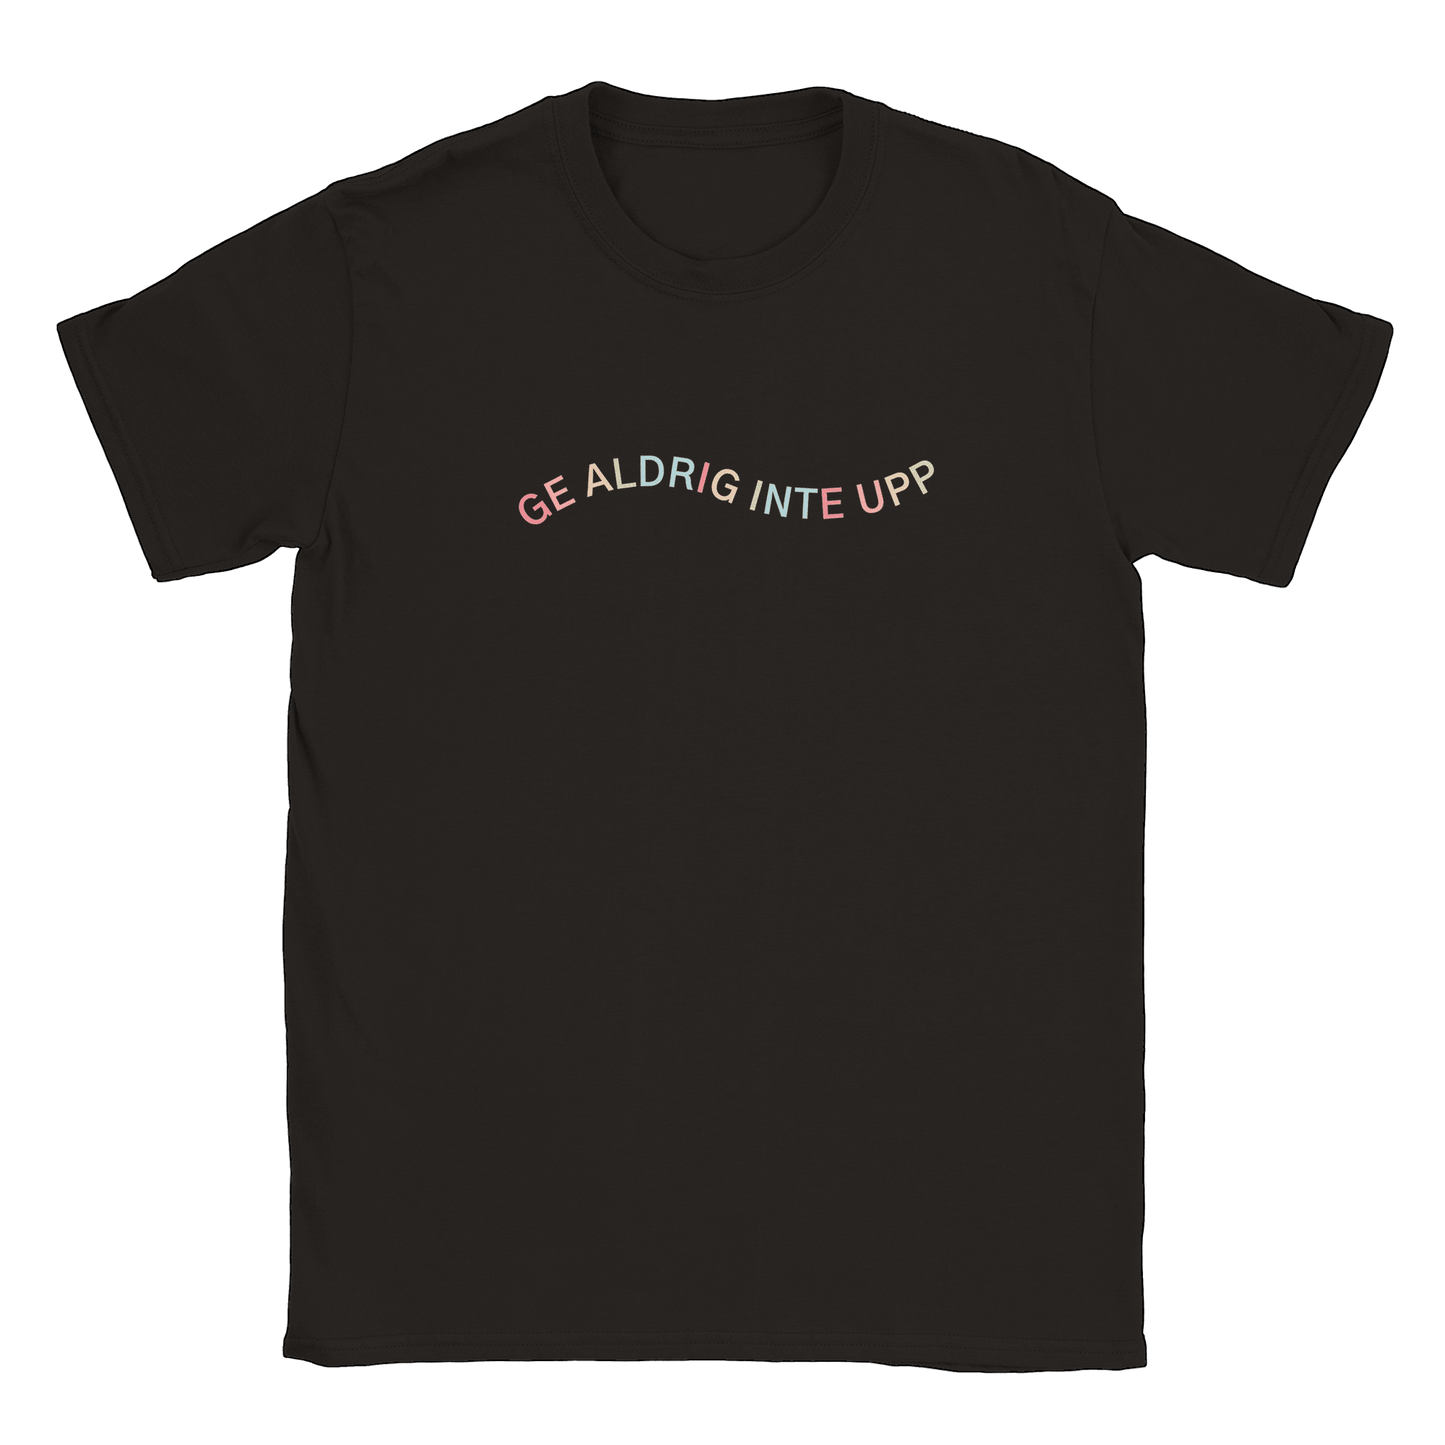 Ge aldrig inte upp - T-shirt Svart